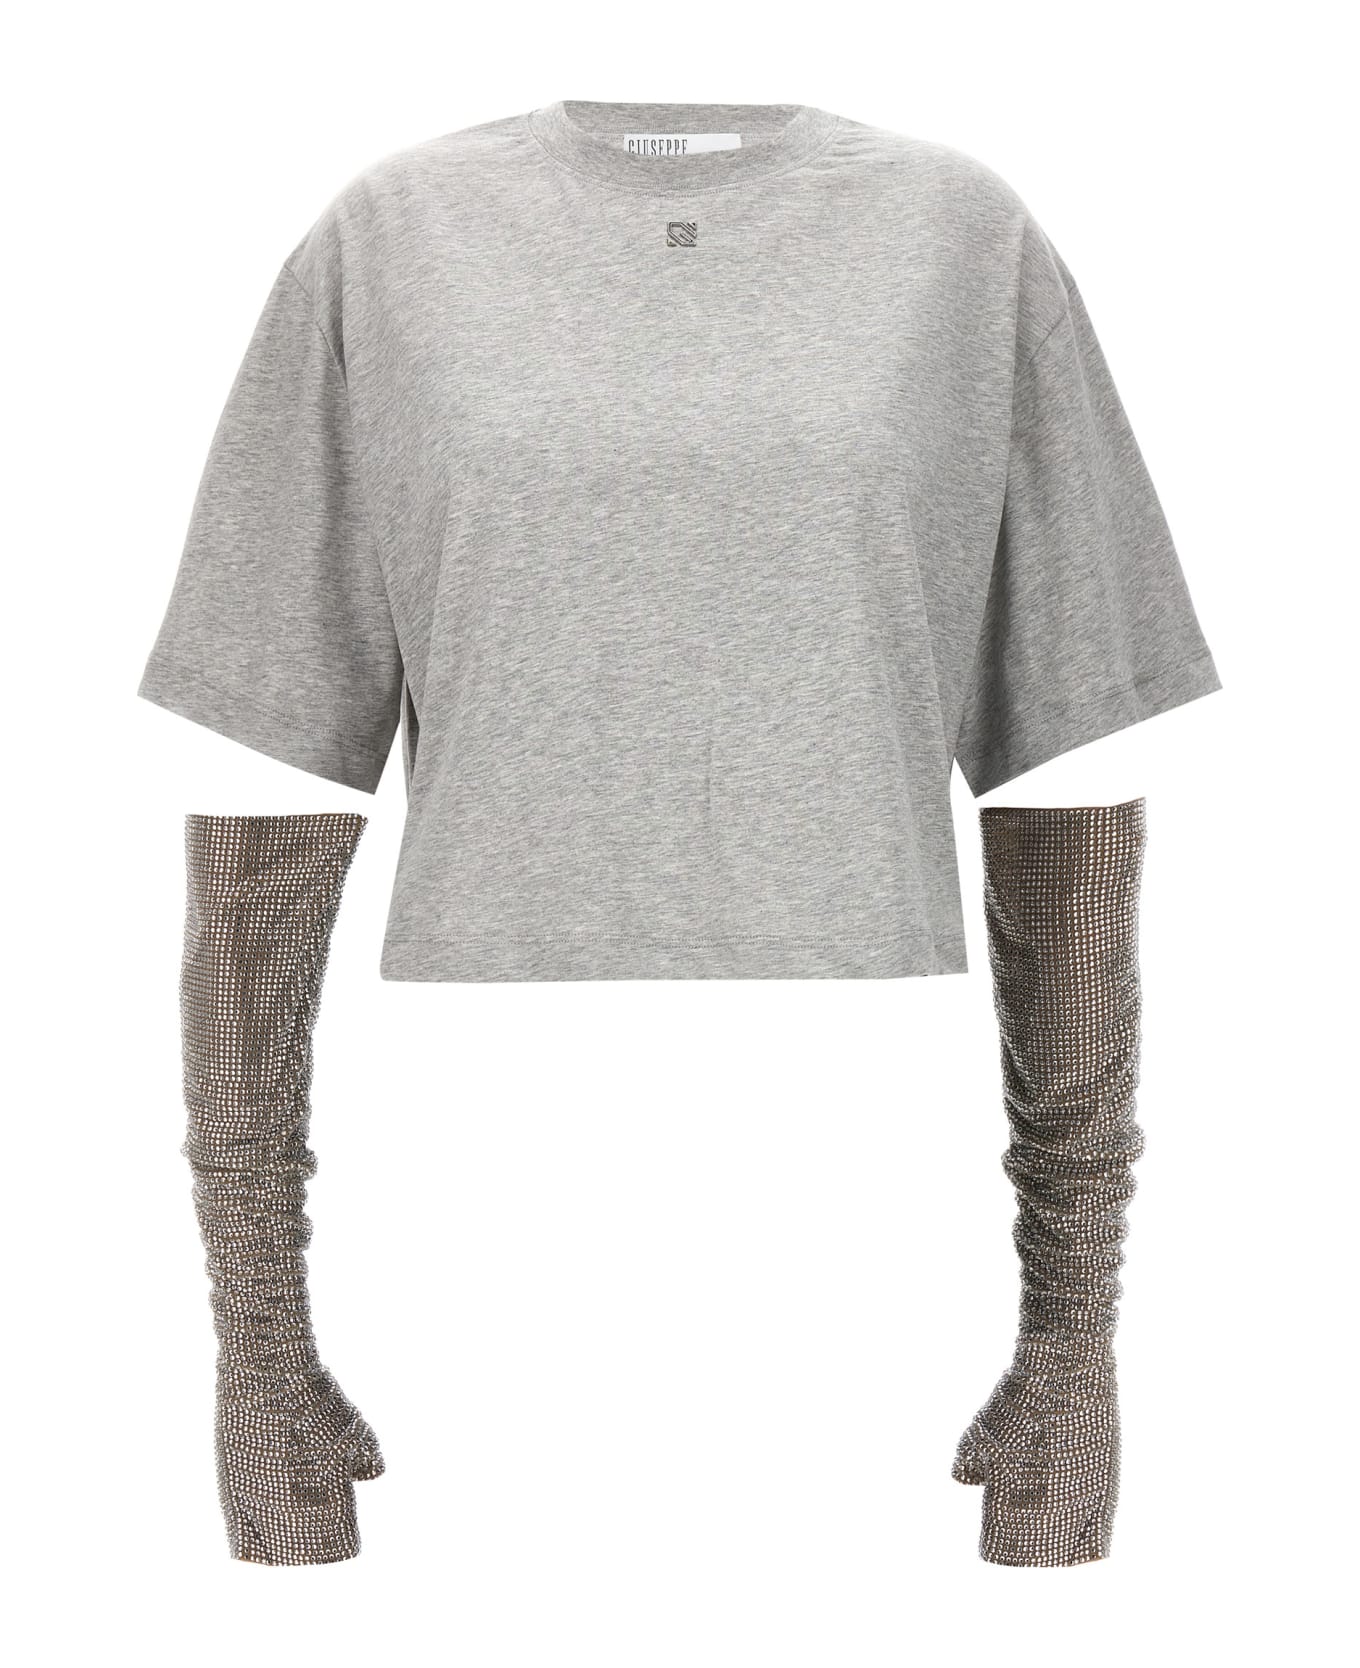 Giuseppe di Morabito Crystal Sleeves T-shirt - Gray